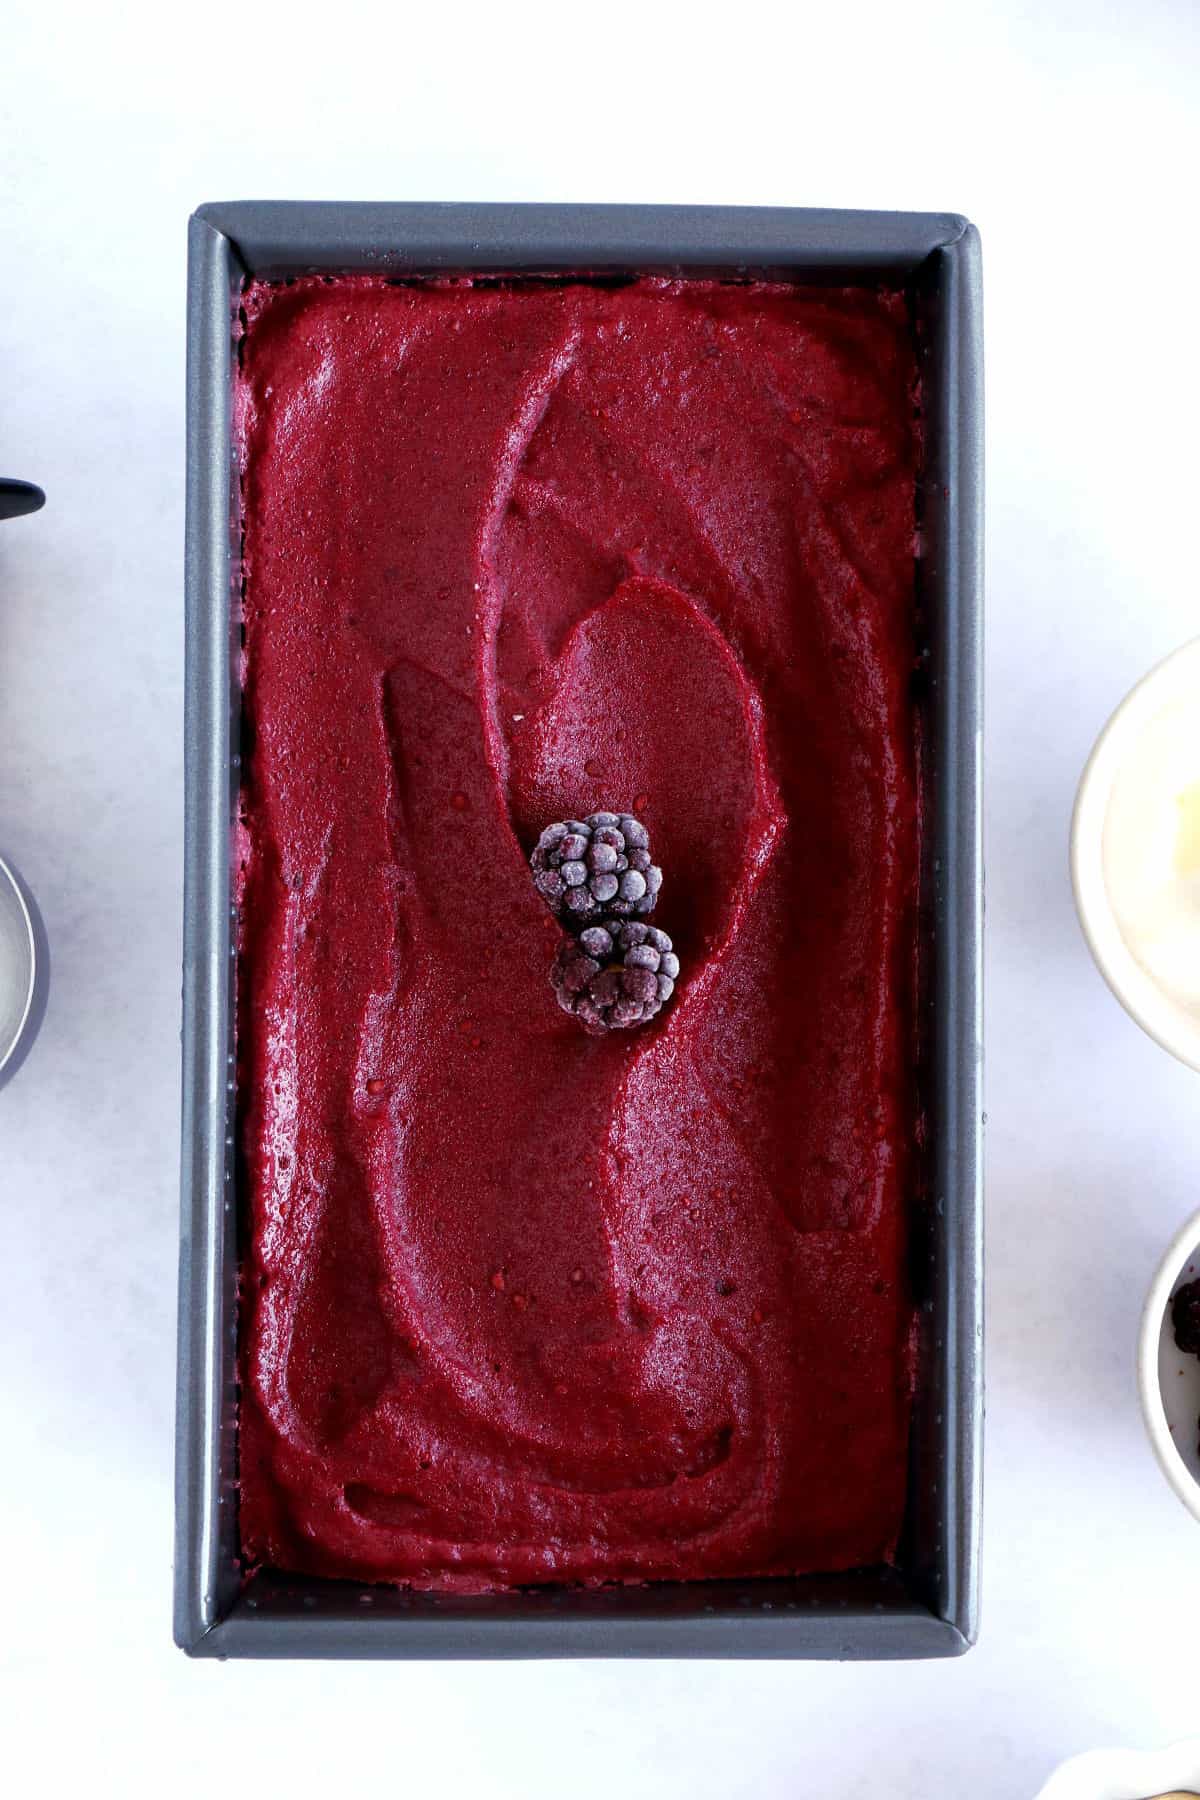 Le yaourt glacé aux fruits rouge, que l'on appelle aussi "frozen yogurt", c'est 5 minutes de préparation pour une glace maison saine, gourmande et rafraîchissante.